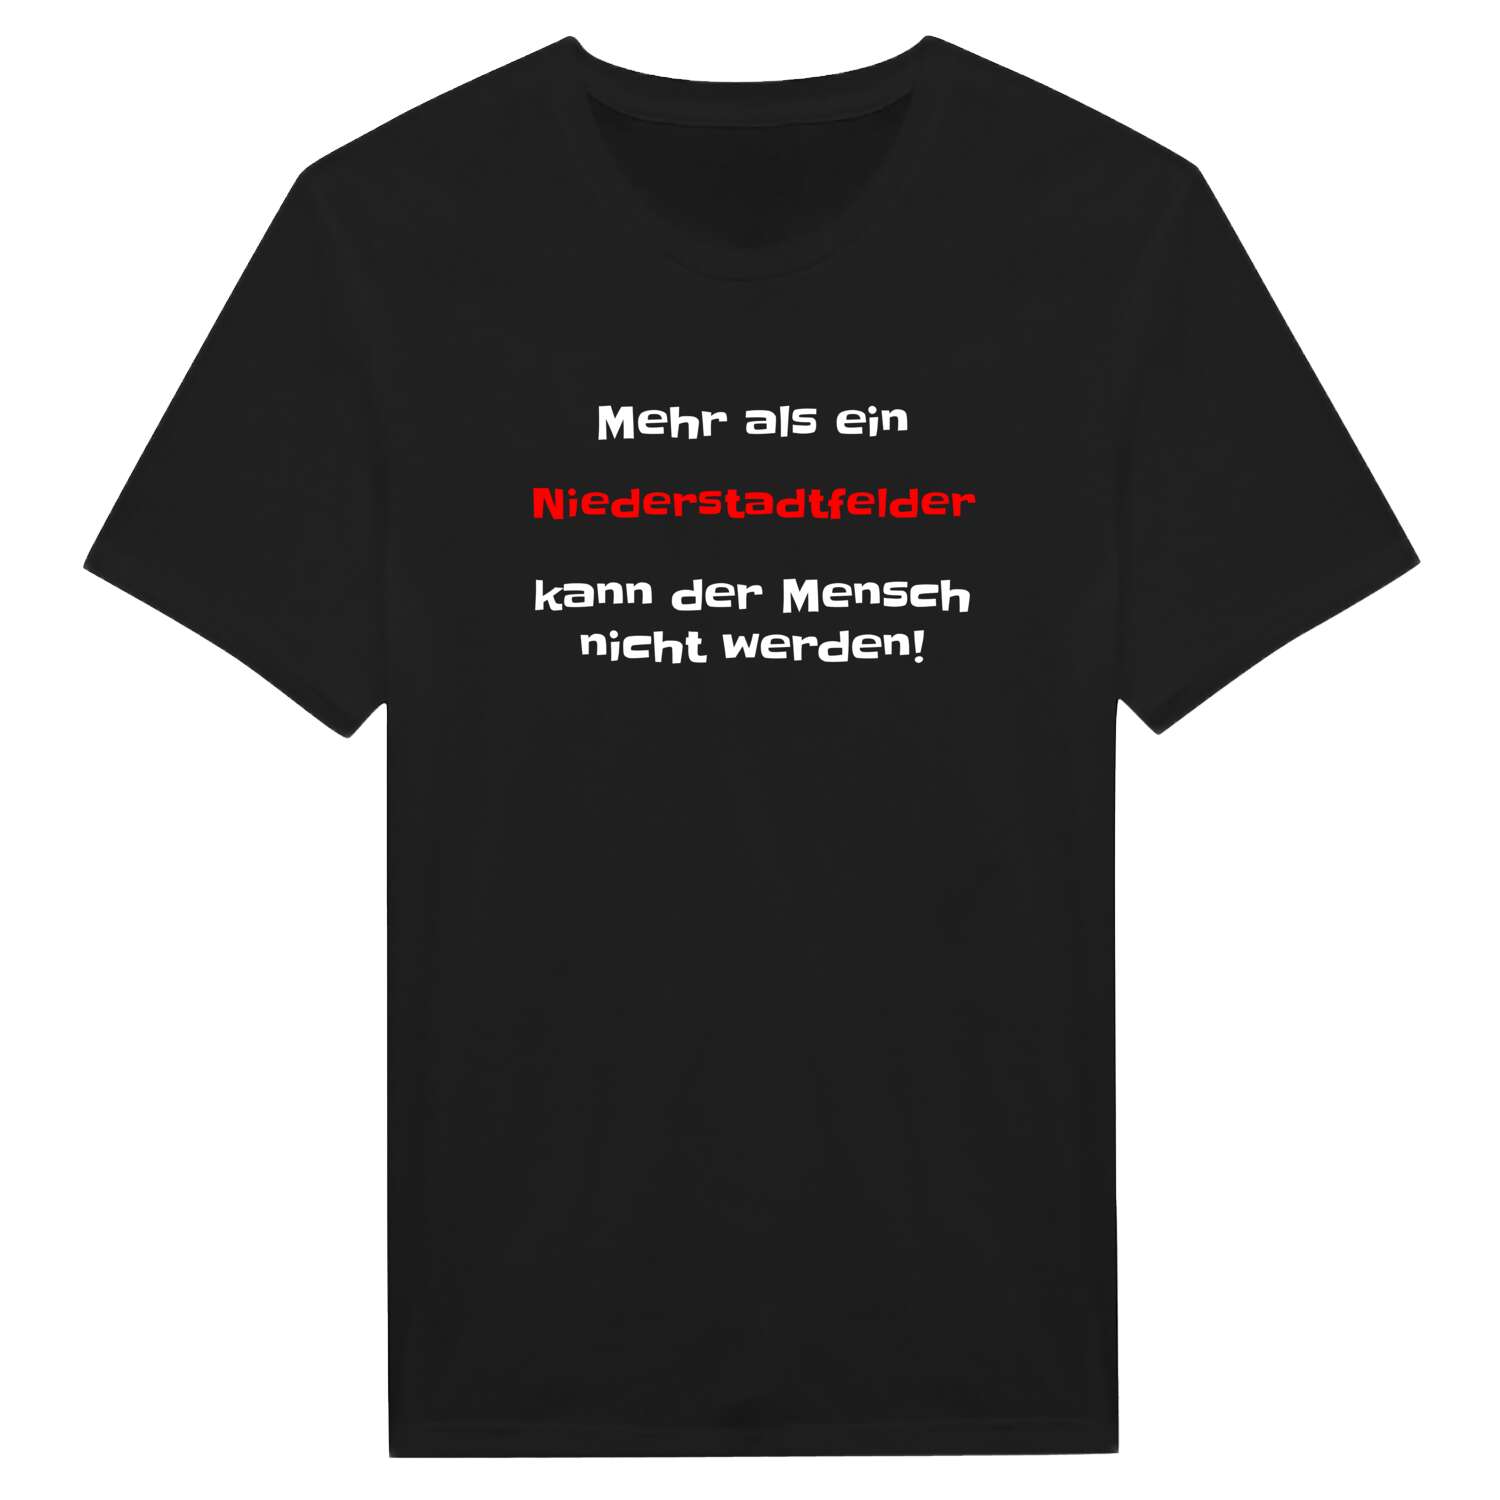 Niederstadtfeld T-Shirt »Mehr als ein«